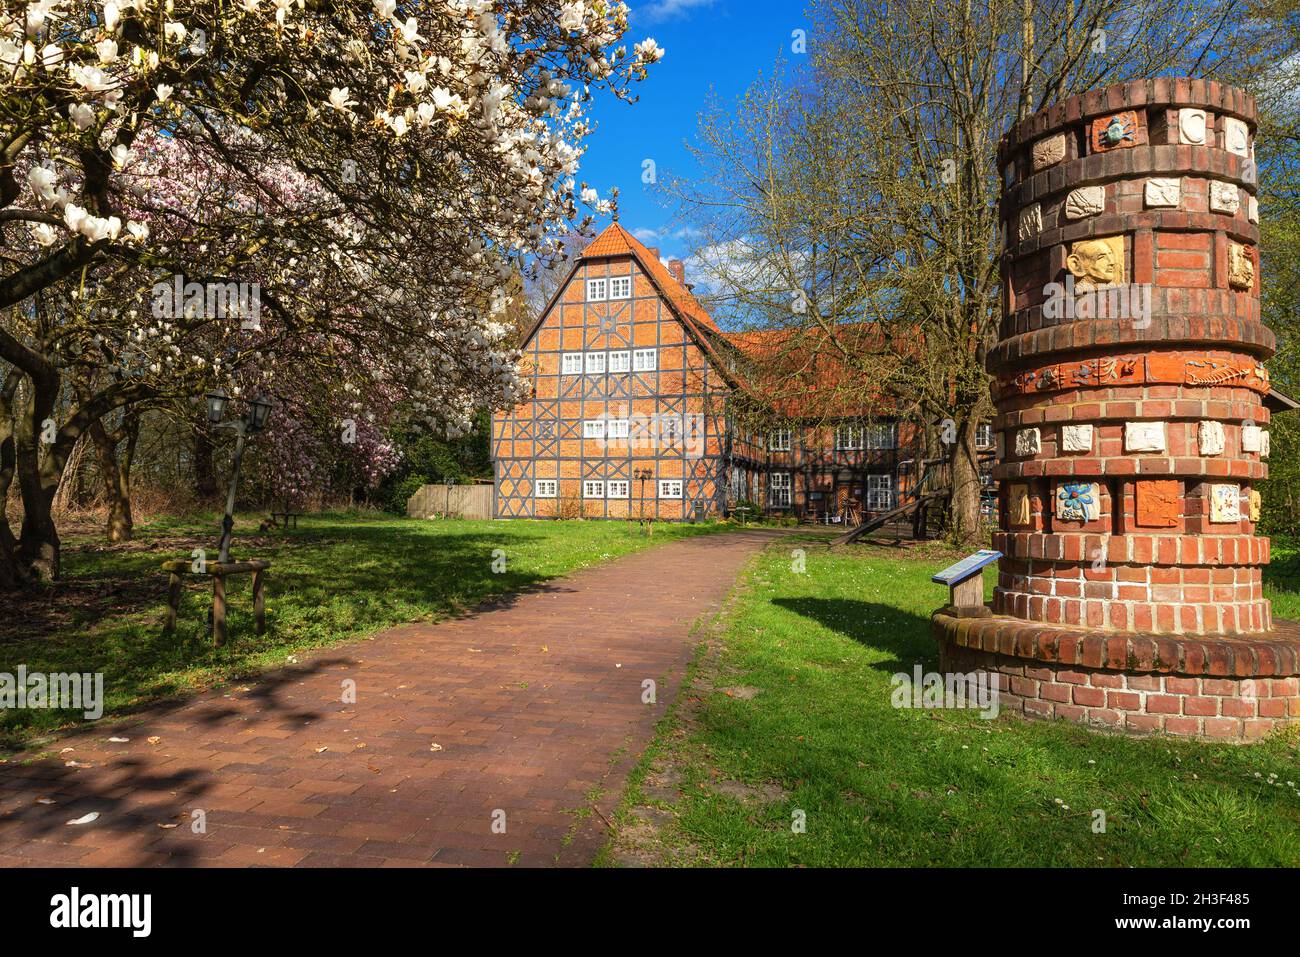 CENTRO di apprendimento NABU Gut Sunder a Winsen an der aller, Germania in primavera Foto Stock